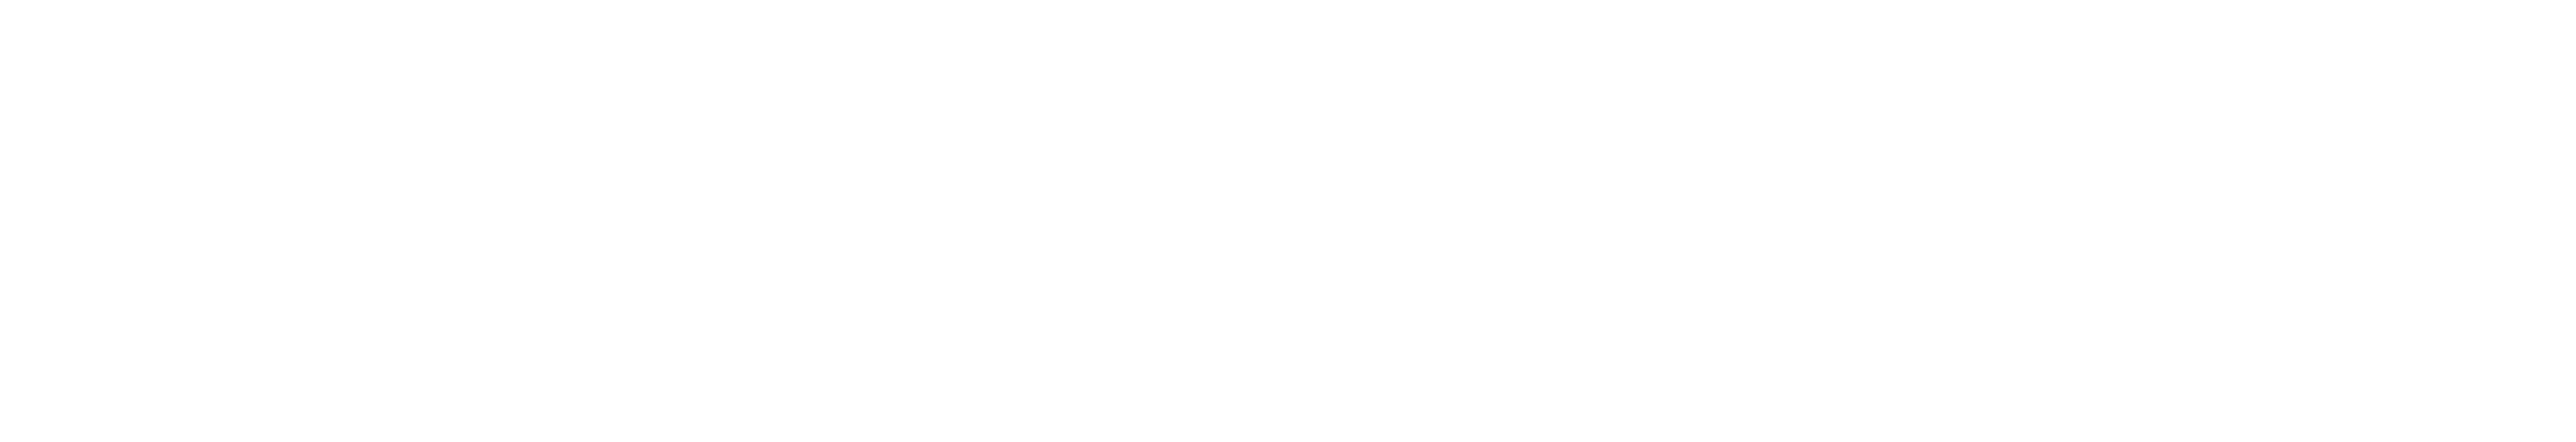 bitcoin trading logo